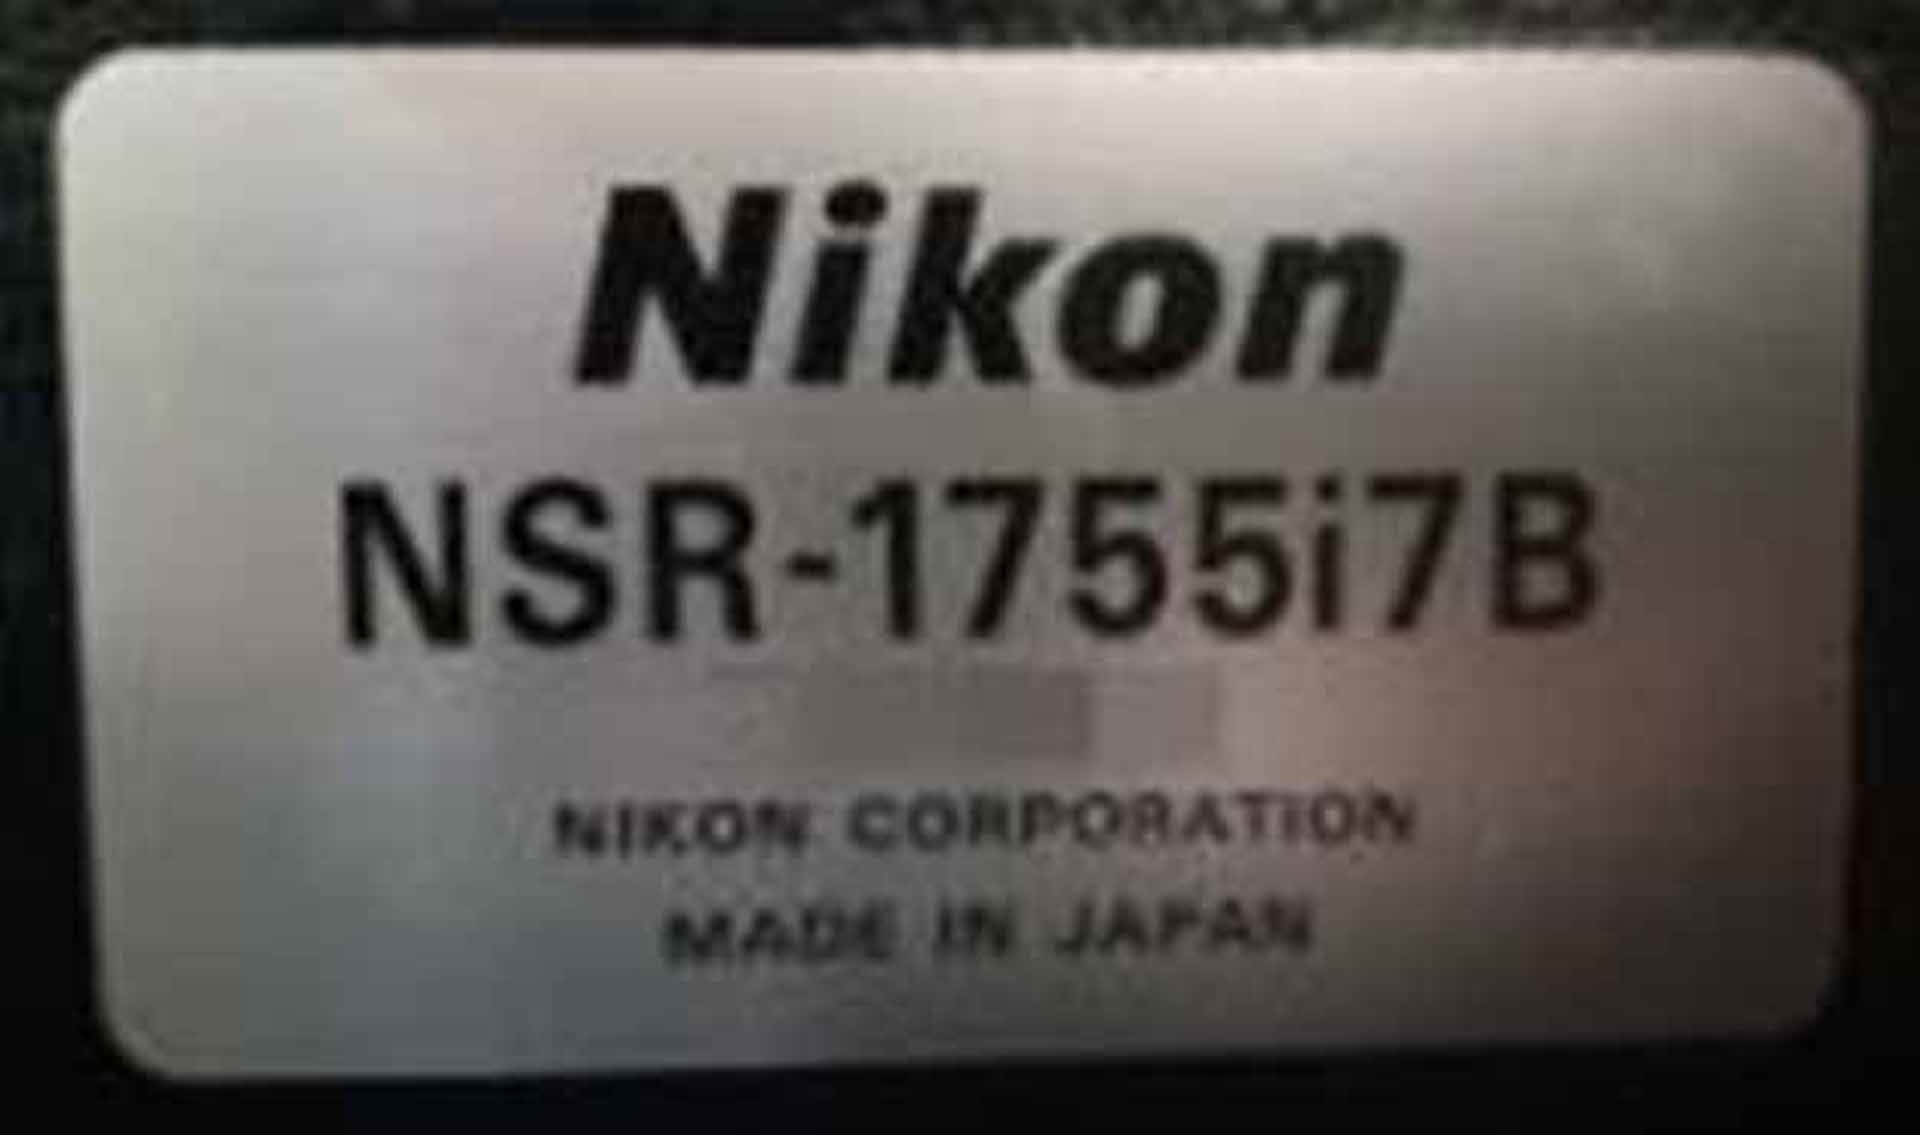 图为 已使用的 NIKON NSR 1755 i7B 待售